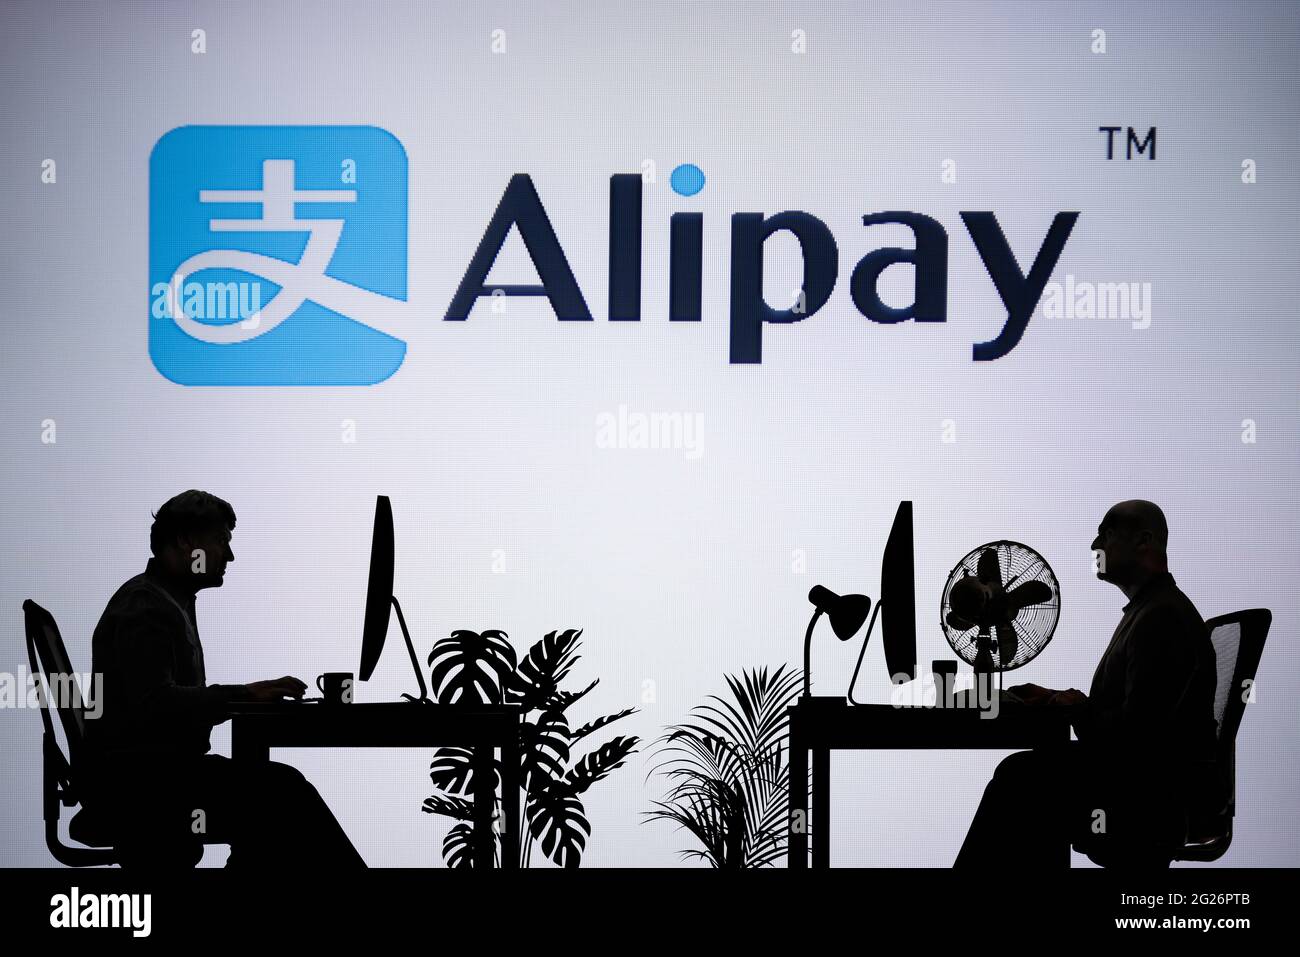 Le logo Alipay est visible sur un écran LED en arrière-plan tandis que deux personnes silhoueteuses travaillent dans un environnement de bureau (usage éditorial uniquement) Banque D'Images